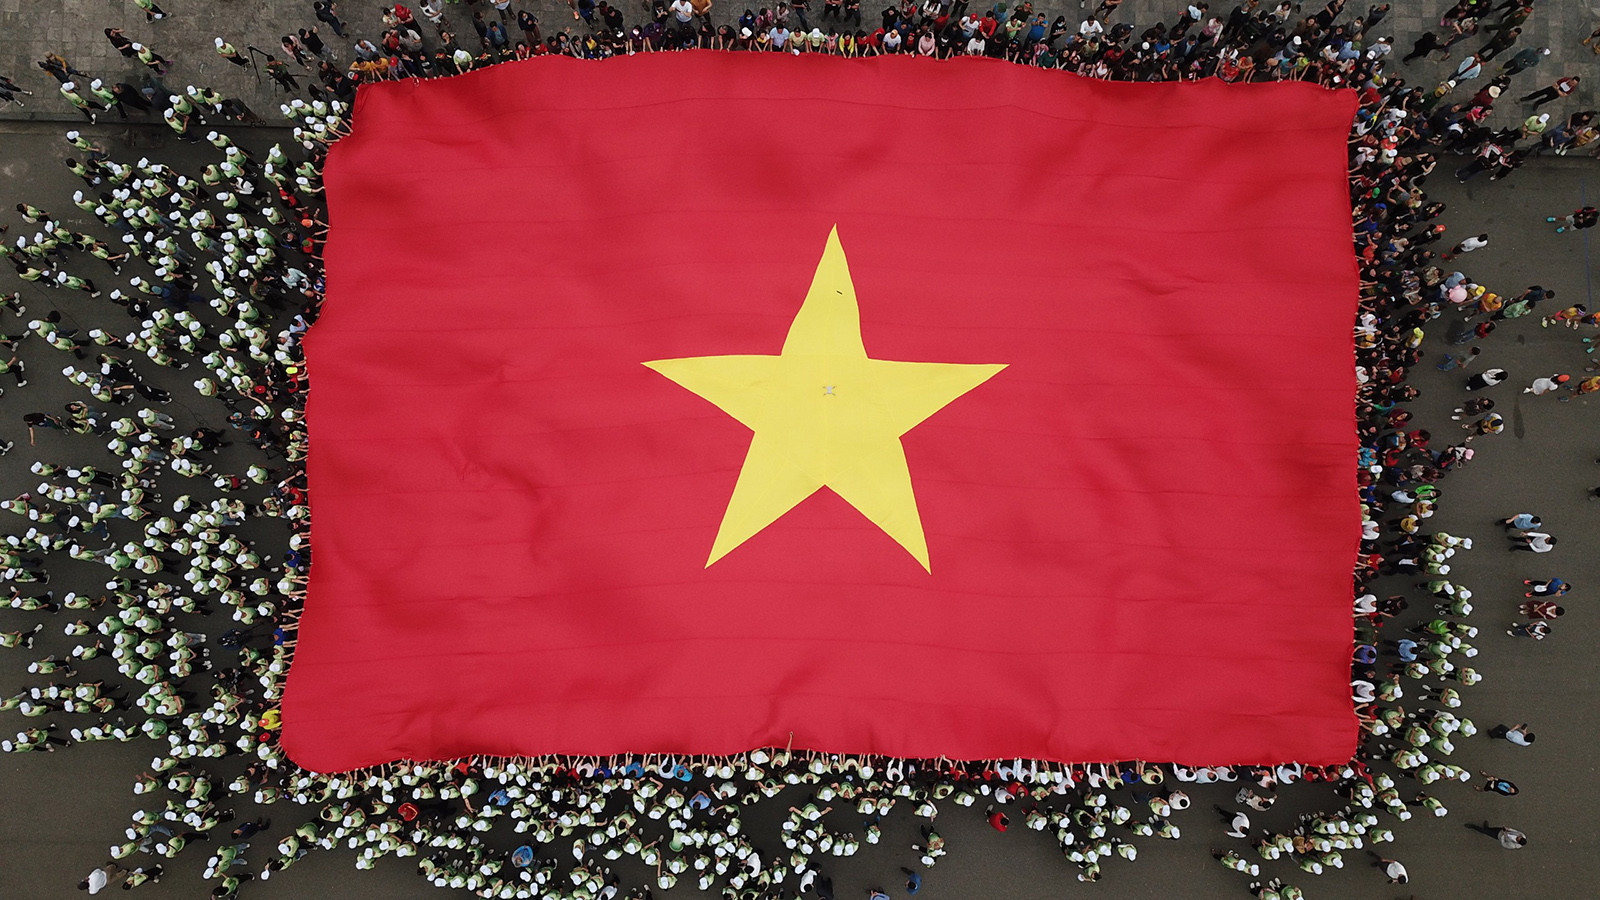 Cờ Tổ quốc rộng 540 mét vuông đại diện cho 54 dân tộc Việt Nam thể hiện ý chí, tinh thần đoàn kết, trách nhiệm đối với quê hương đất nước